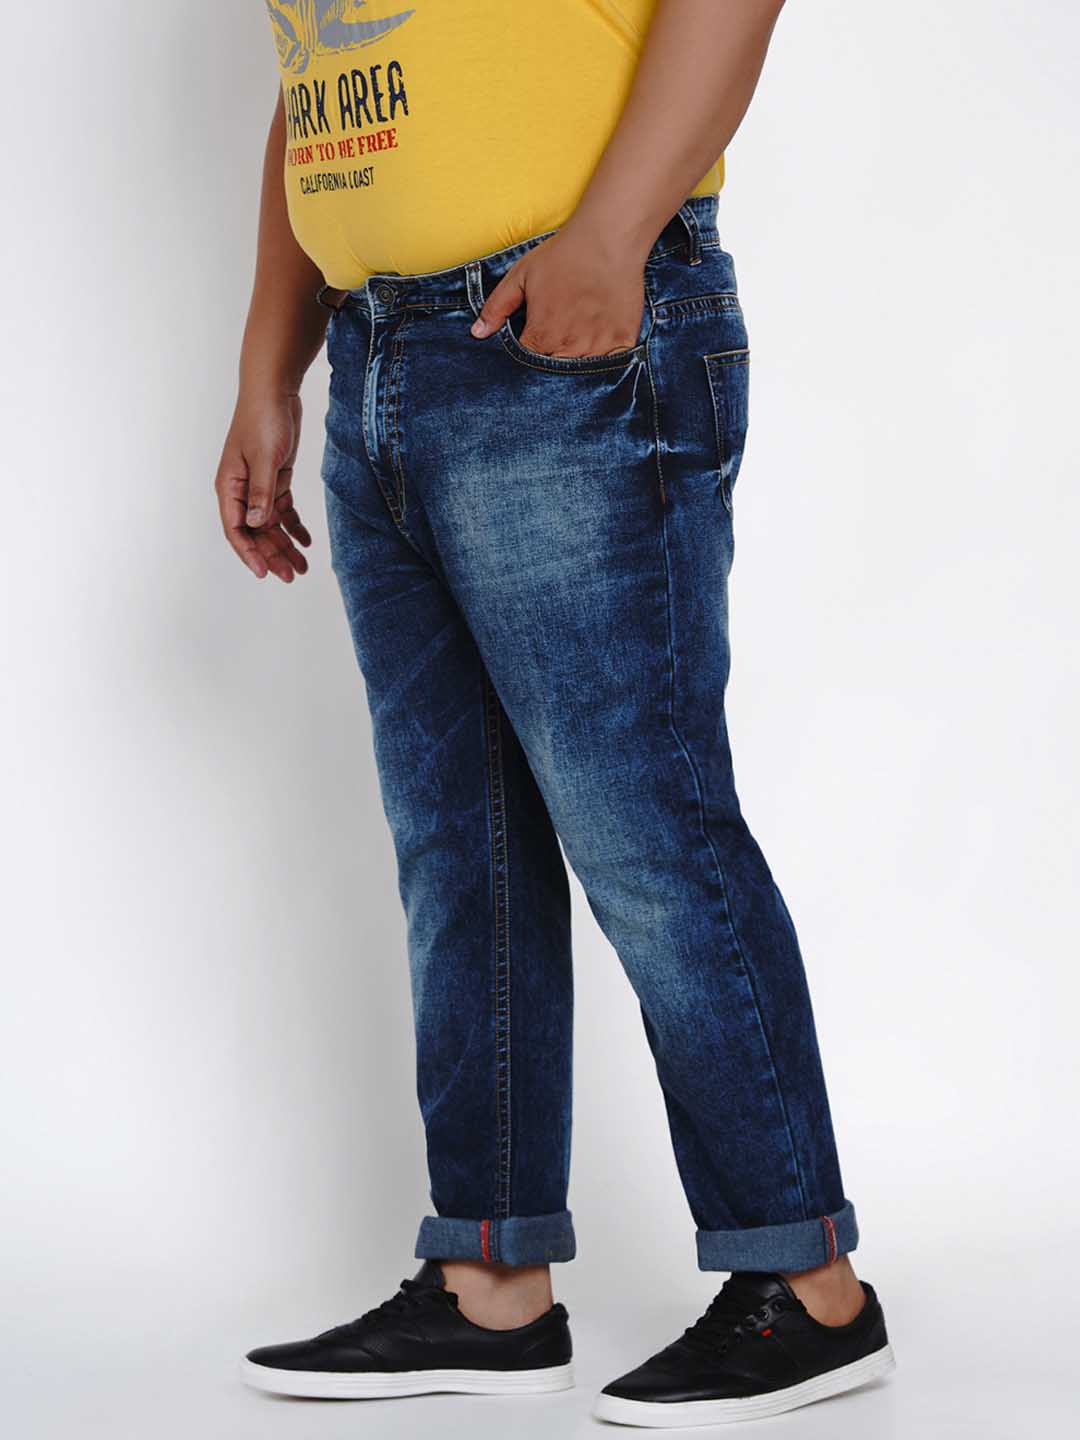 bottomwear/jeans/JPJ1284/jpj1284-4.jpg